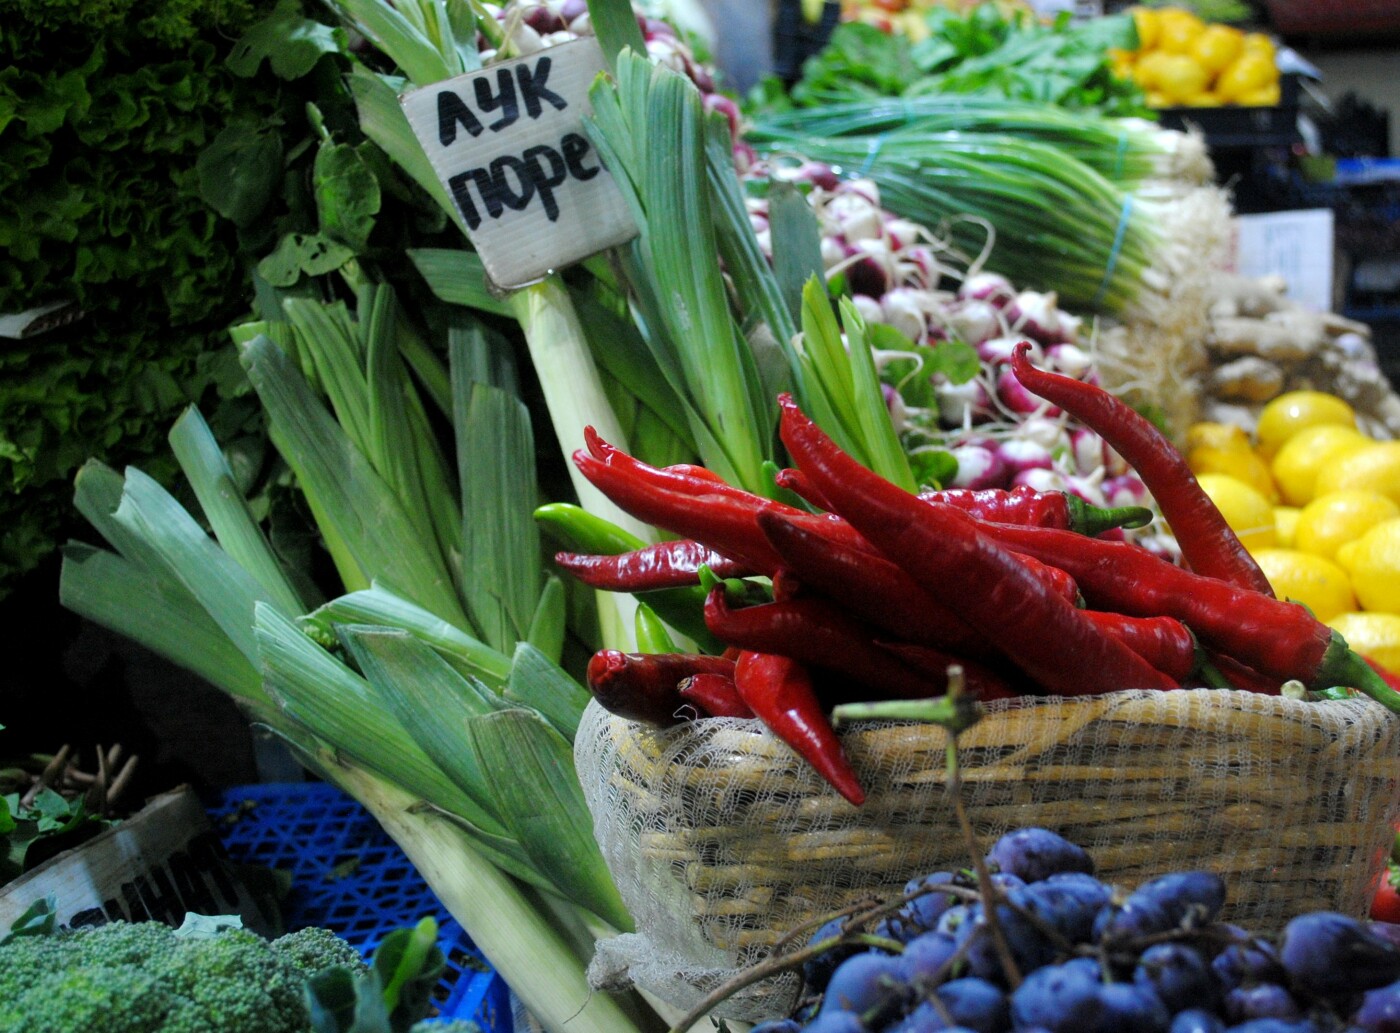 Разные овощи и зелень в павильоне Северного рынка